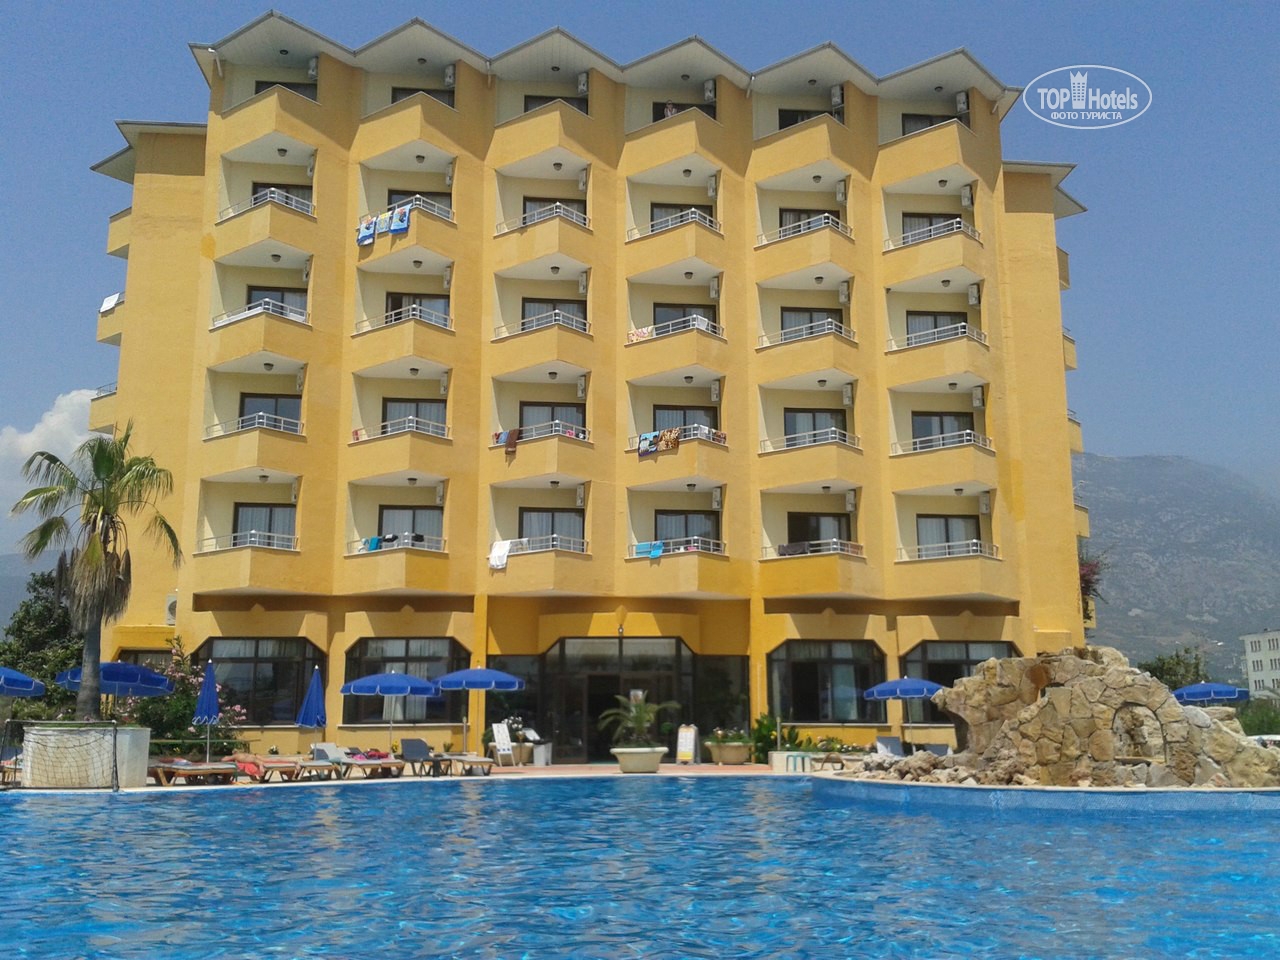 Sunshine Hotel - Alanya 4. 